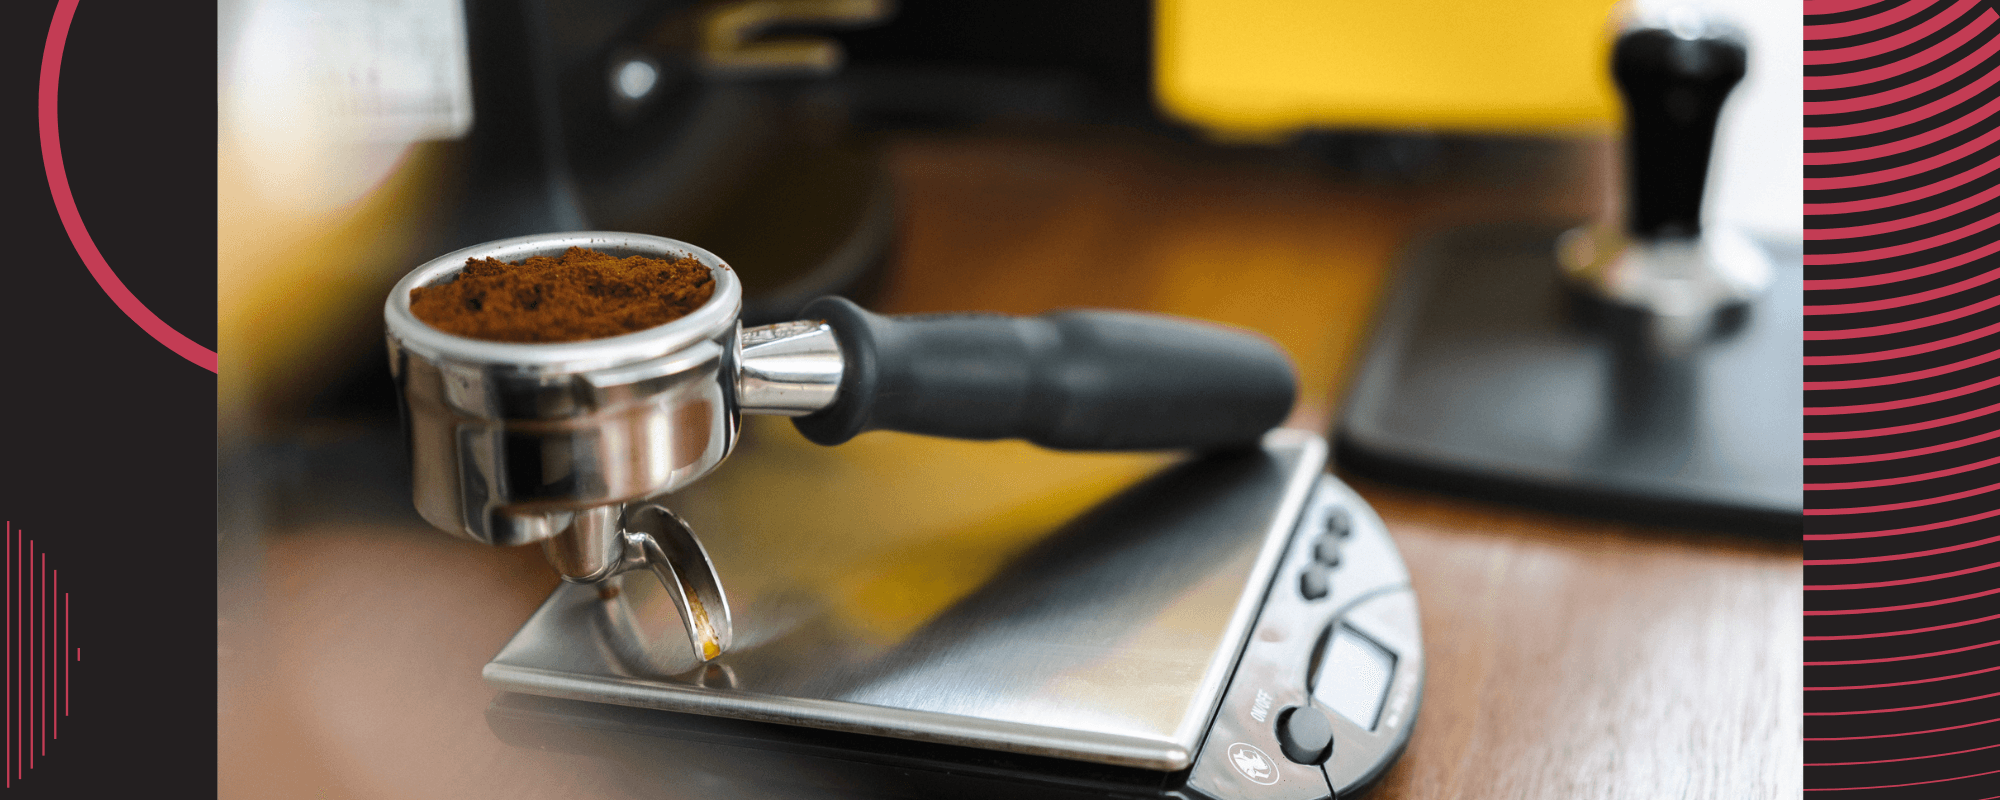 Who Sells Coffee Grinders? - Coffee Hit